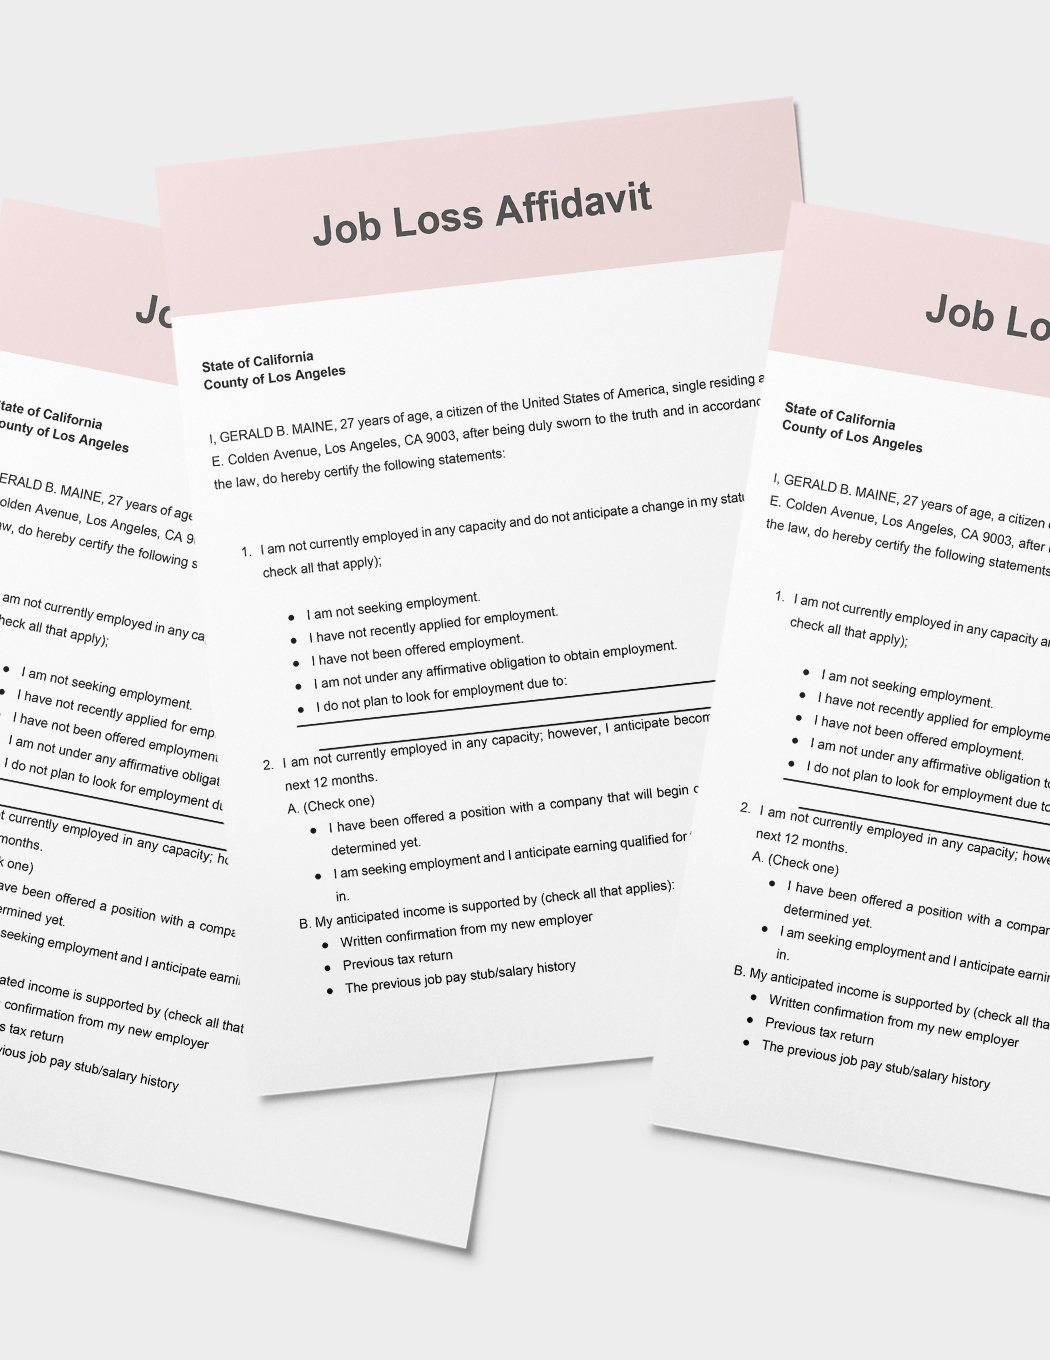 Job Loss Affidavit Template in Word, Google Docs, PDF